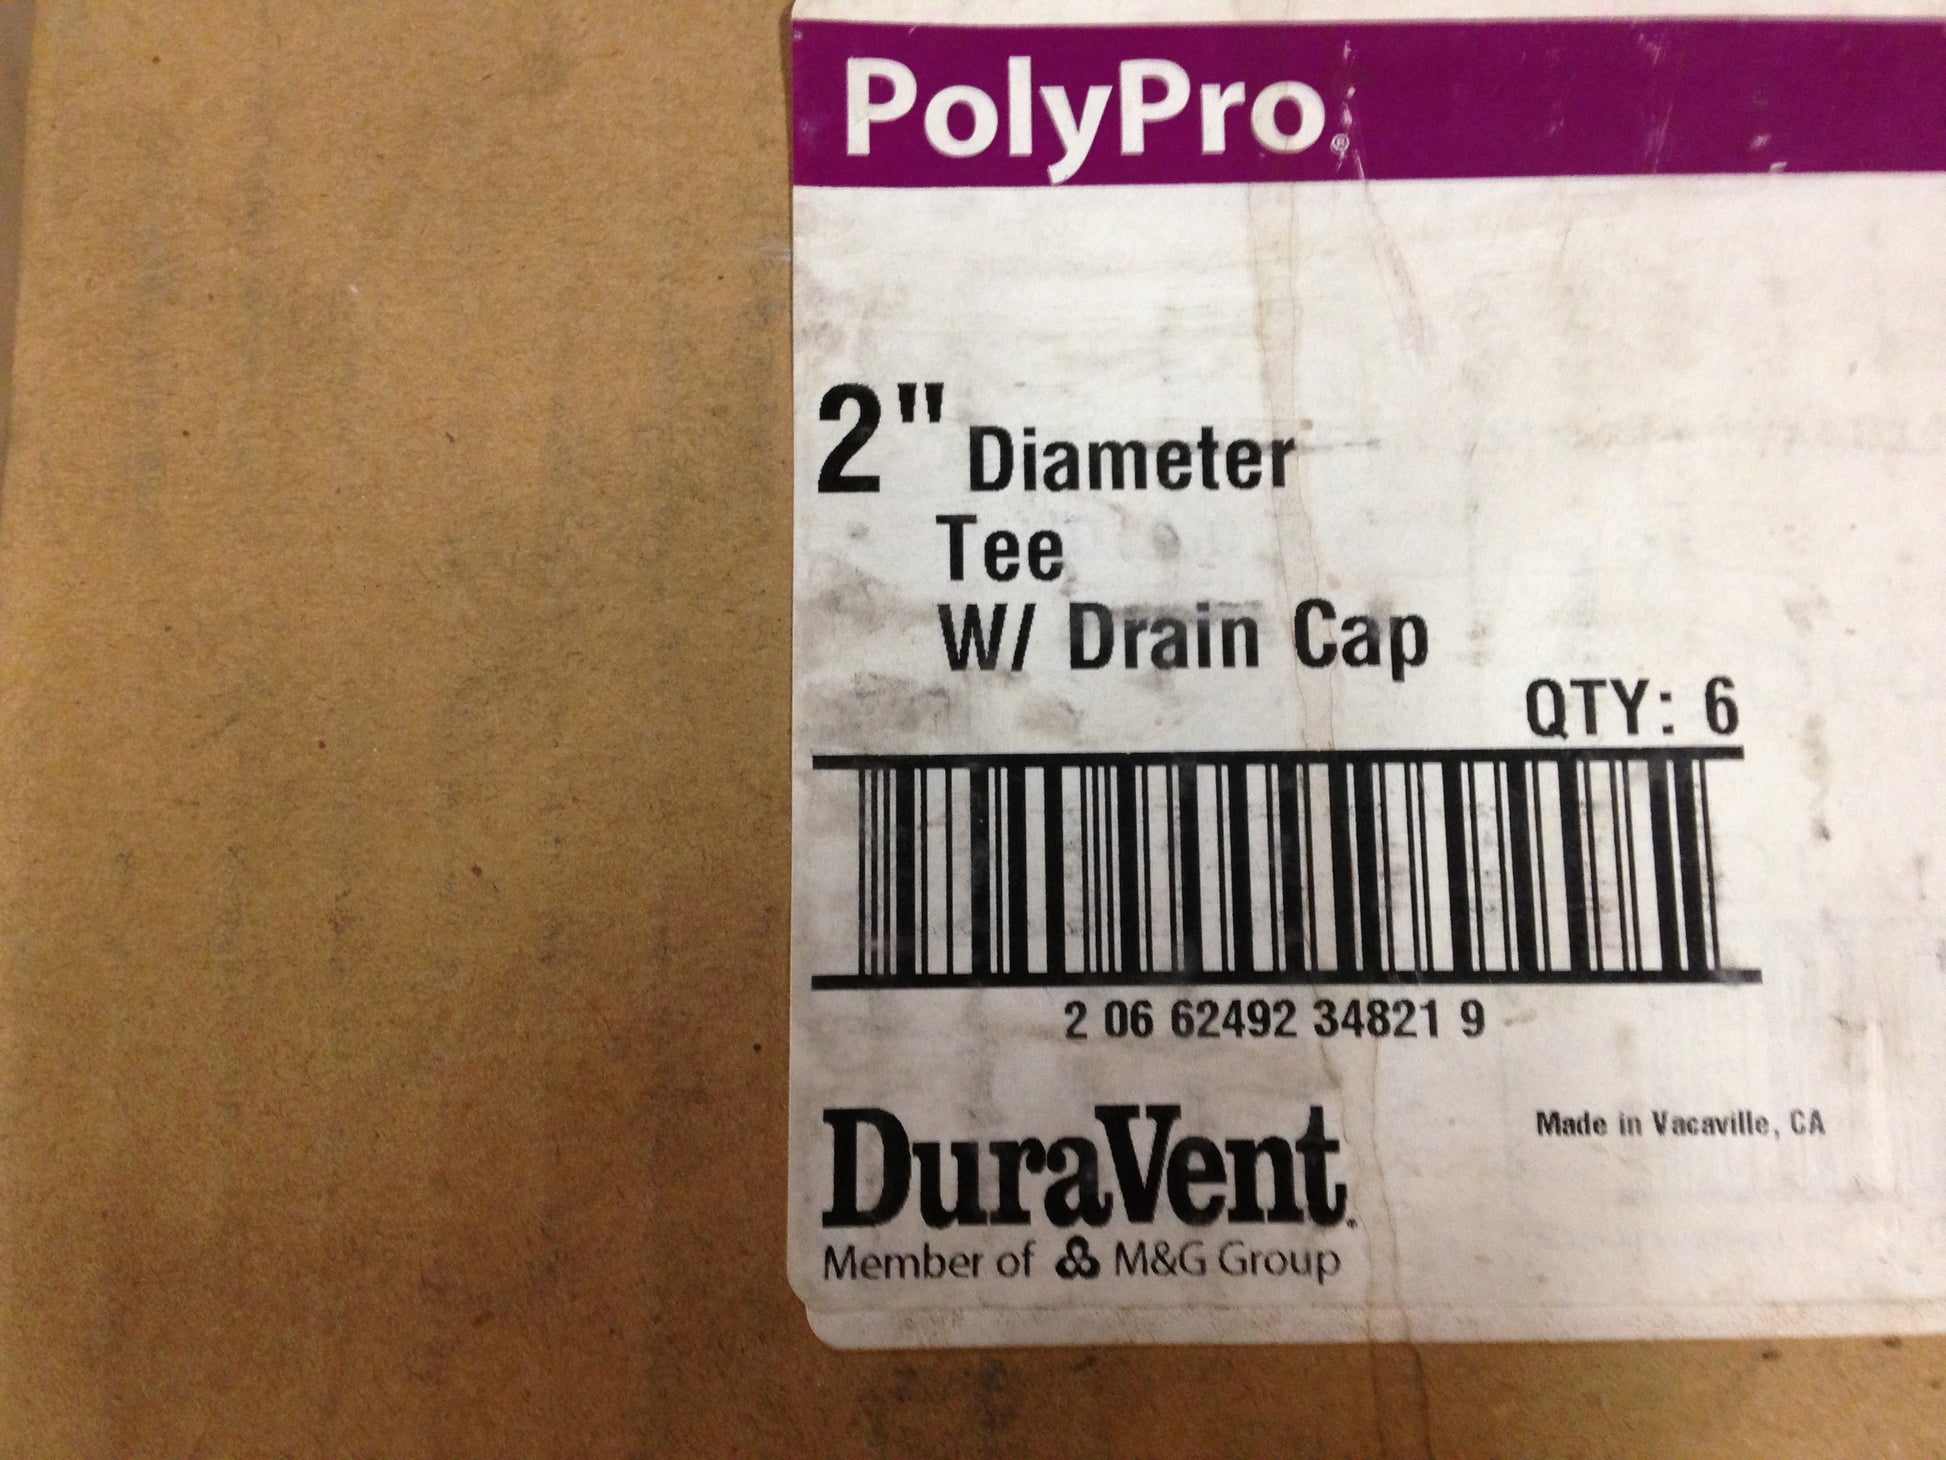 2" DIAMETER TEE W/DRAIN CAP, SOLD AS 6 PER BOX